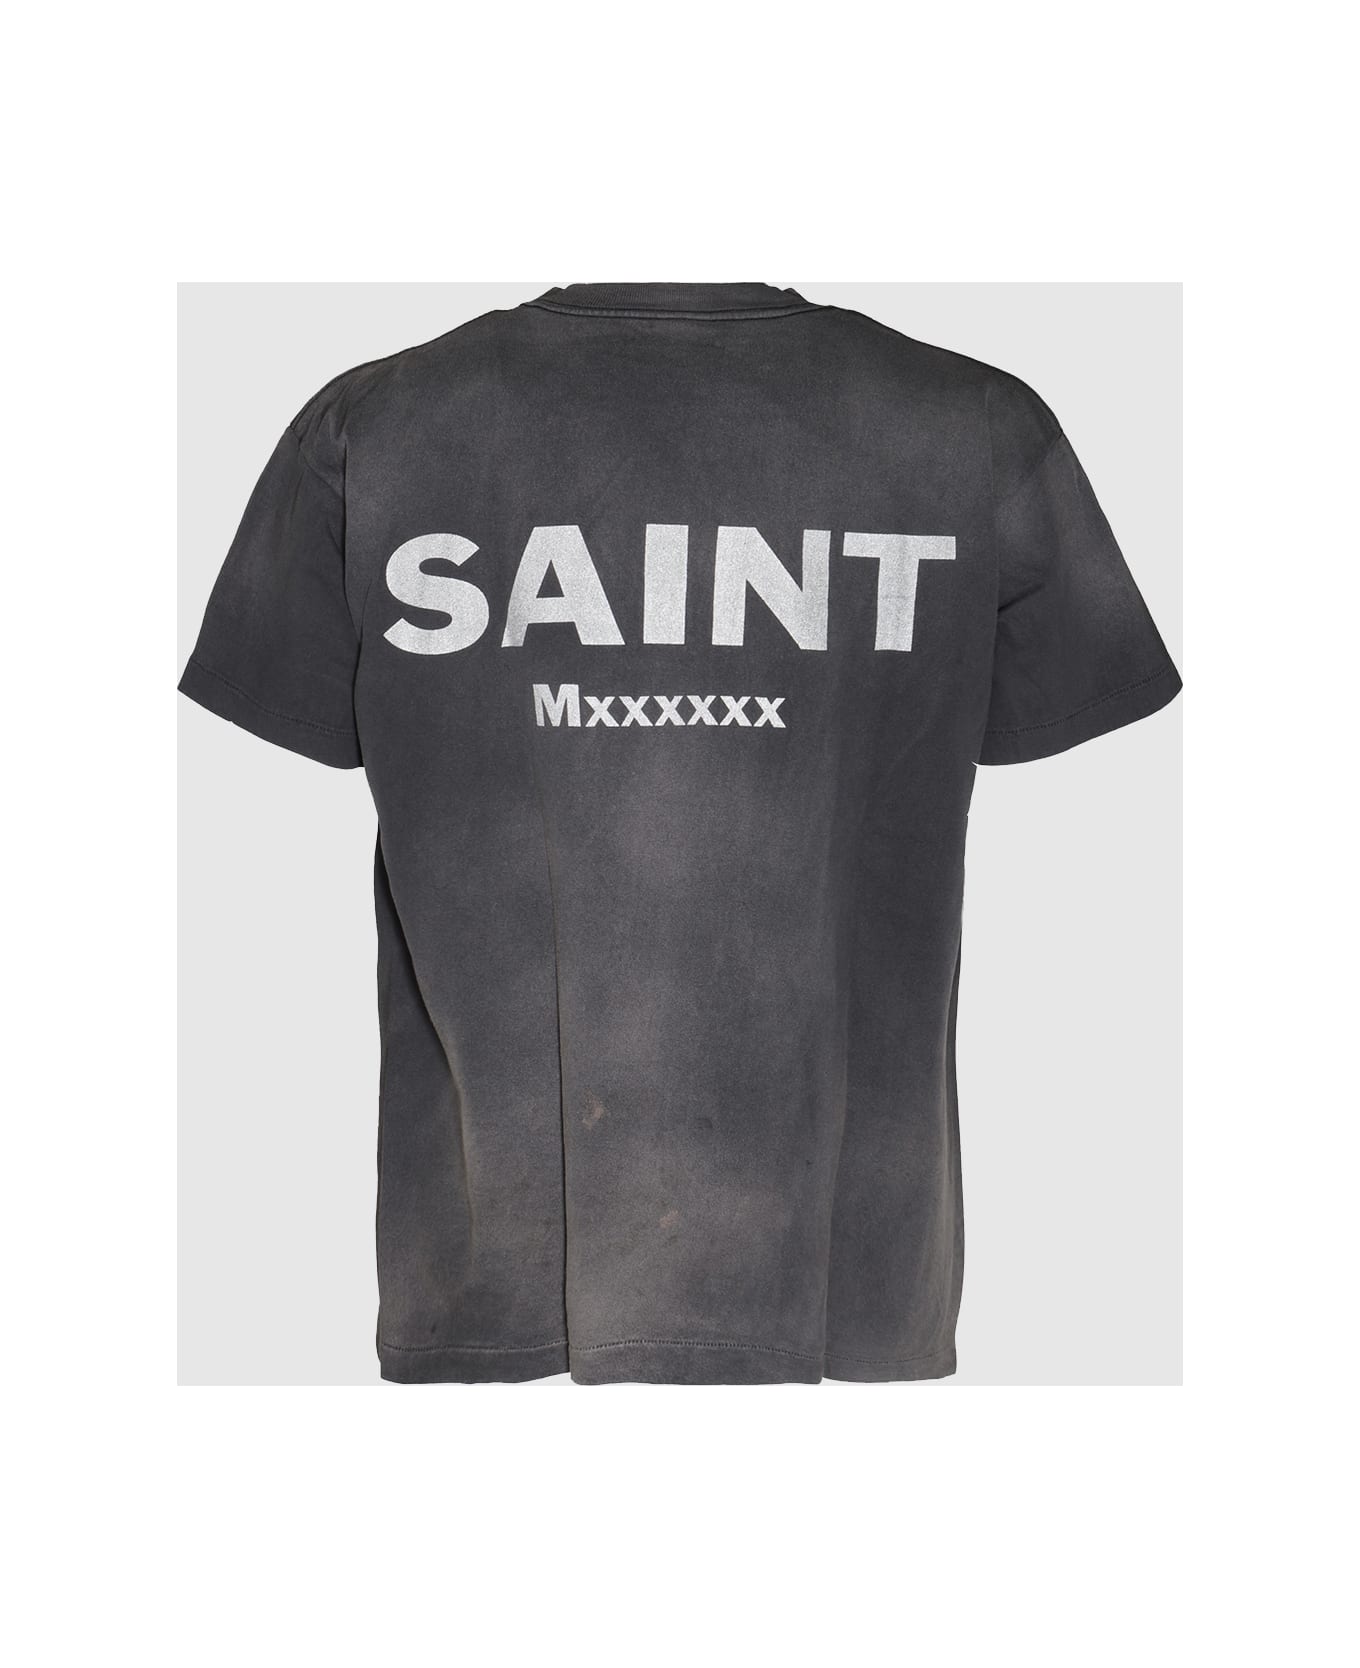 SAINT Mxxxxxx Black Cotton T-shirt